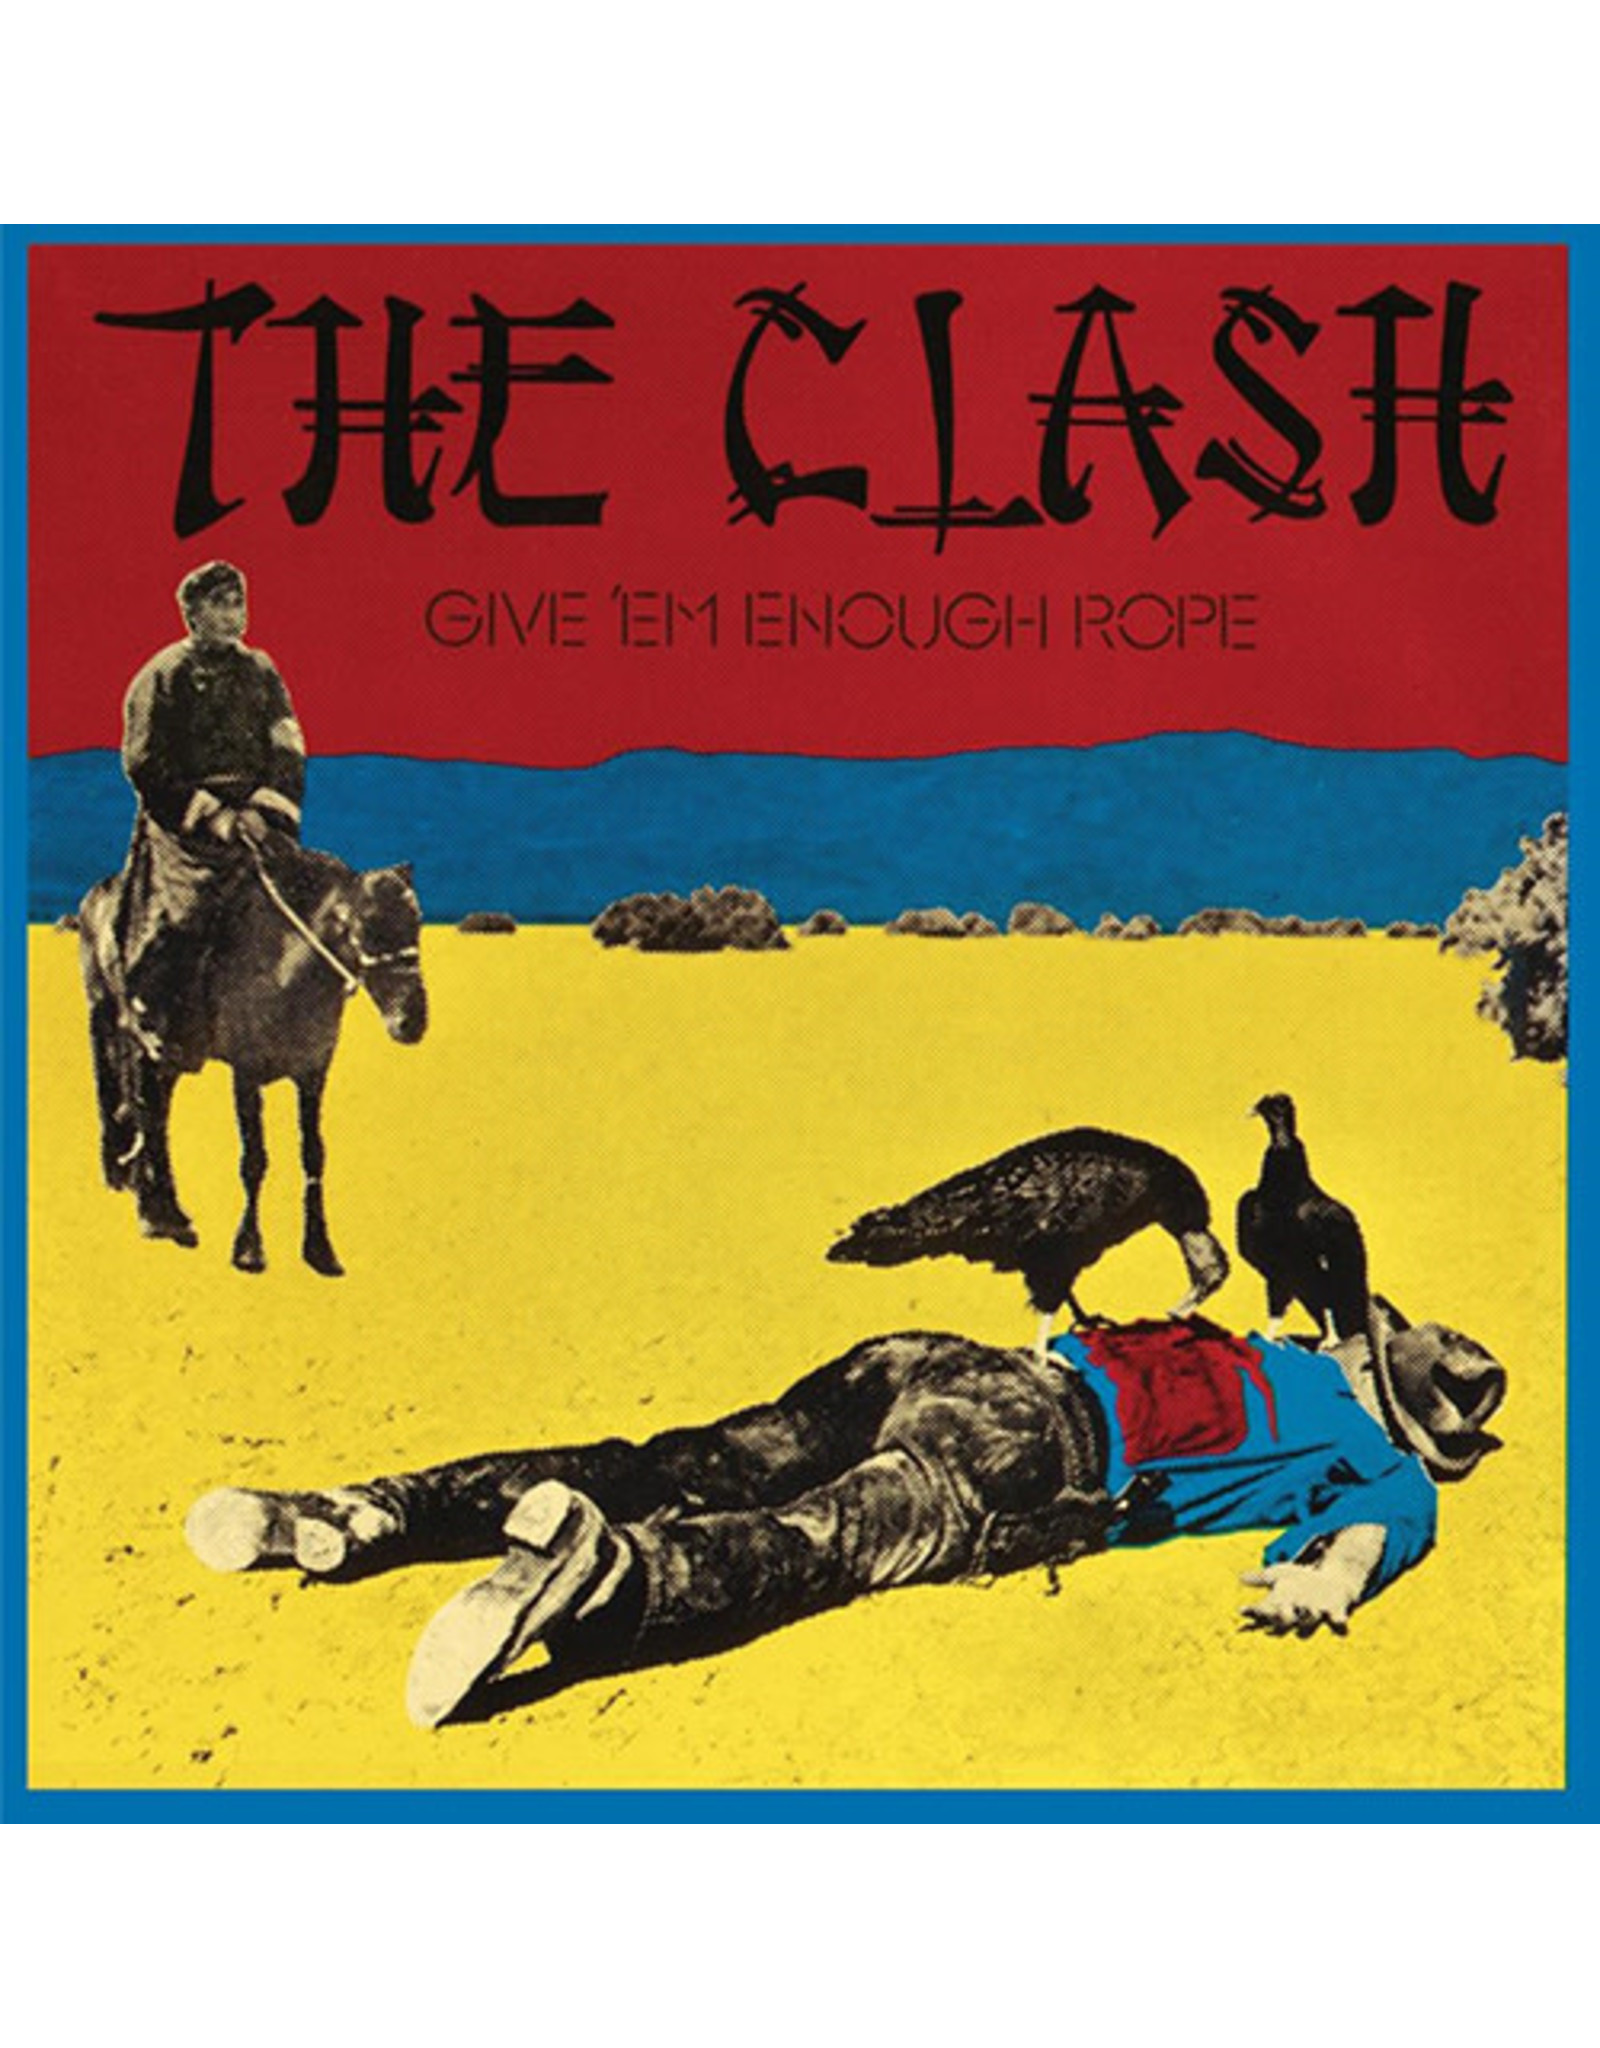 Epic Clash: Give 'Em Enough Rope LP